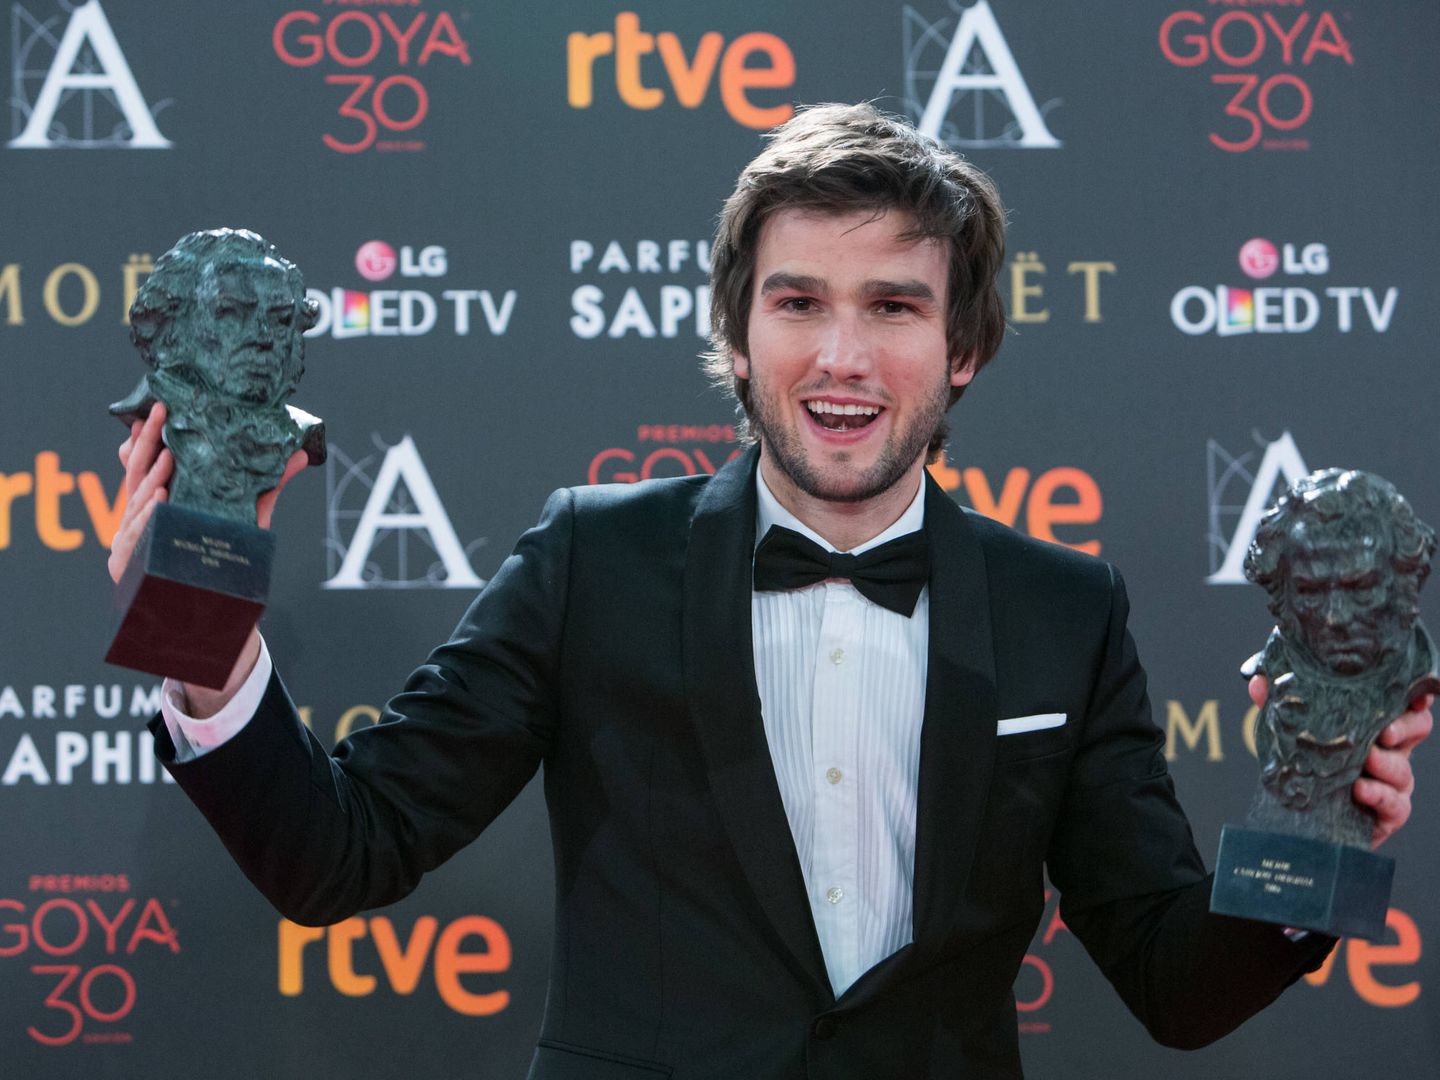  Lucas Vidal, en los Goya 2016. (Getty)